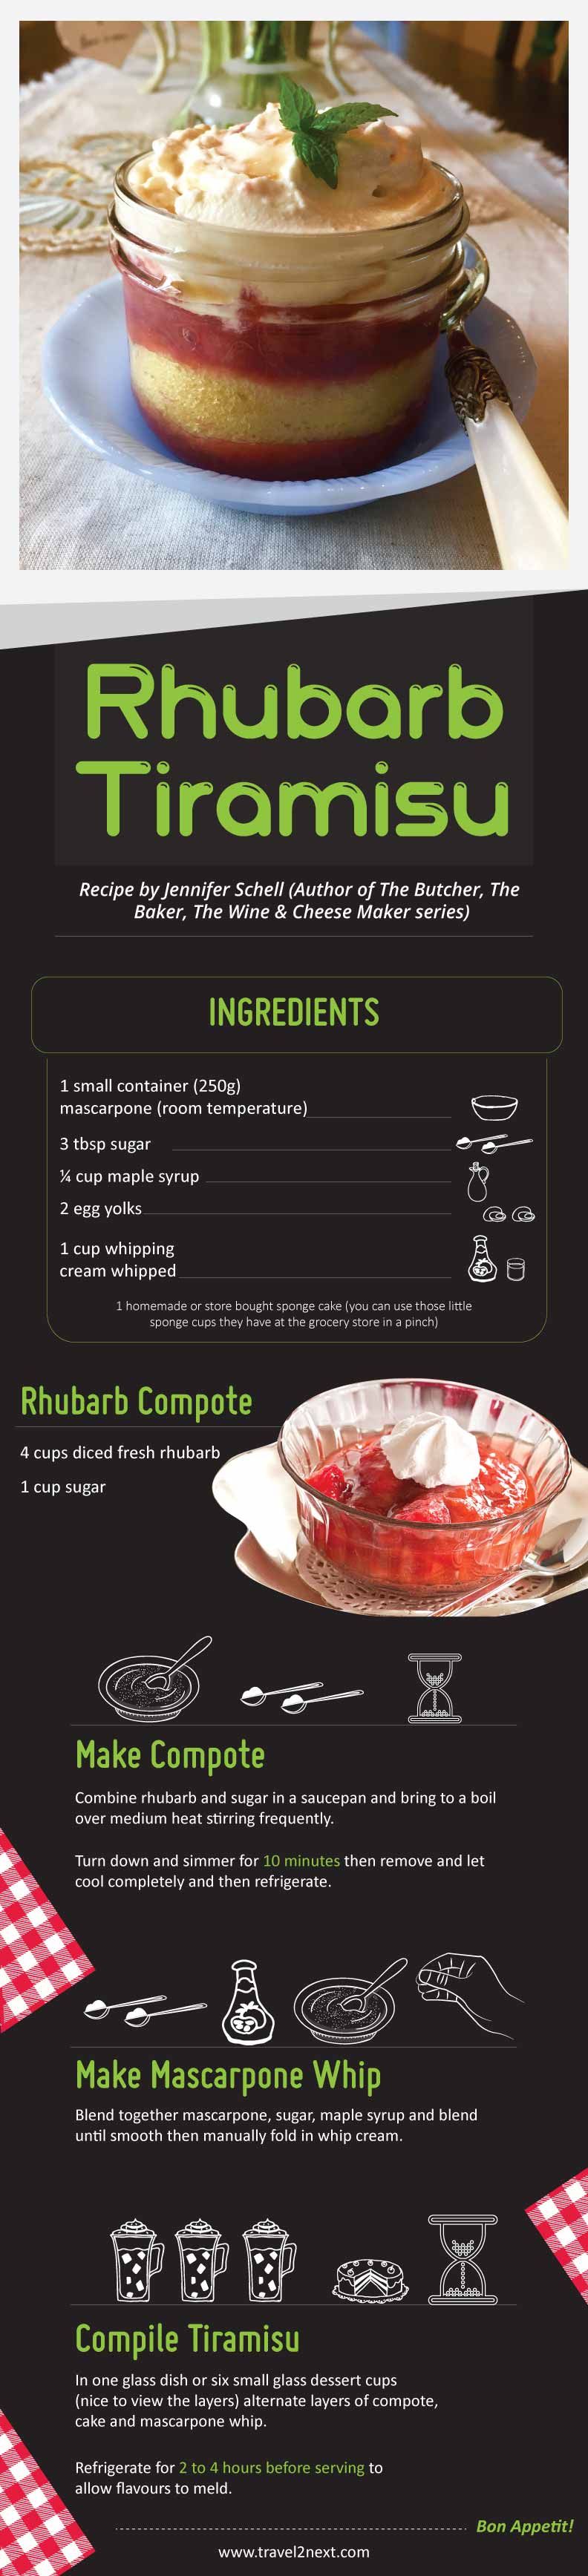 rhubarb tiramisu recipe